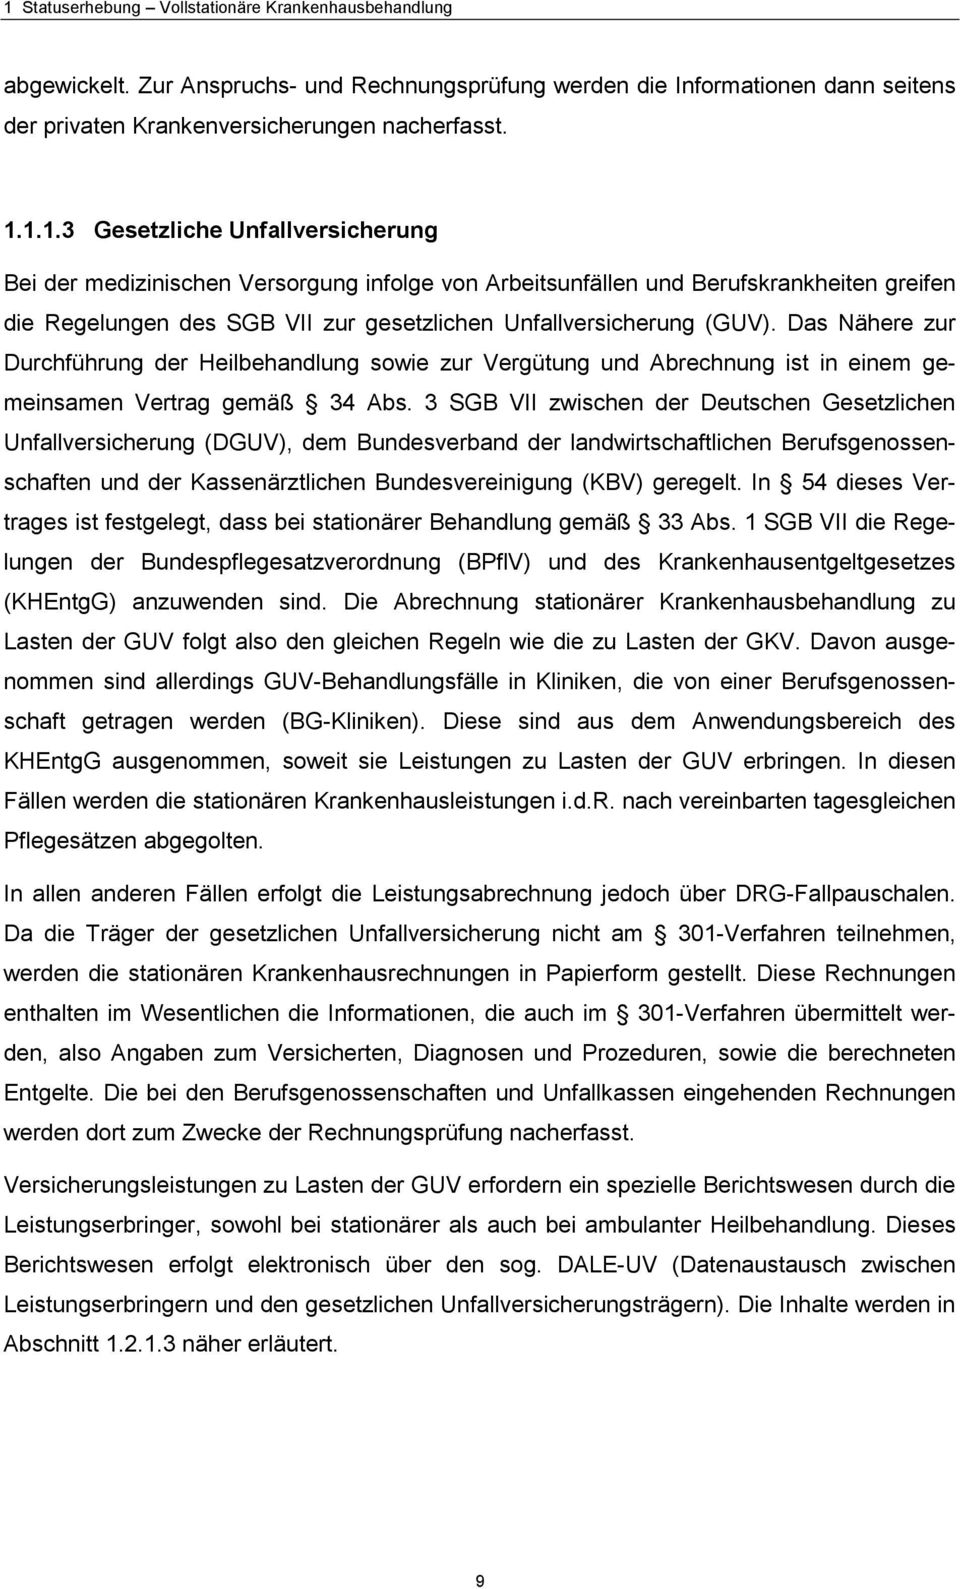 3 SGB VII zwischen der Deutschen Gesetzlichen Unfallversicherung (DGUV), dem Bundesverband der landwirtschaftlichen Berufsgenossenschaften und der Kassenärztlichen Bundesvereinigung (KBV) geregelt.